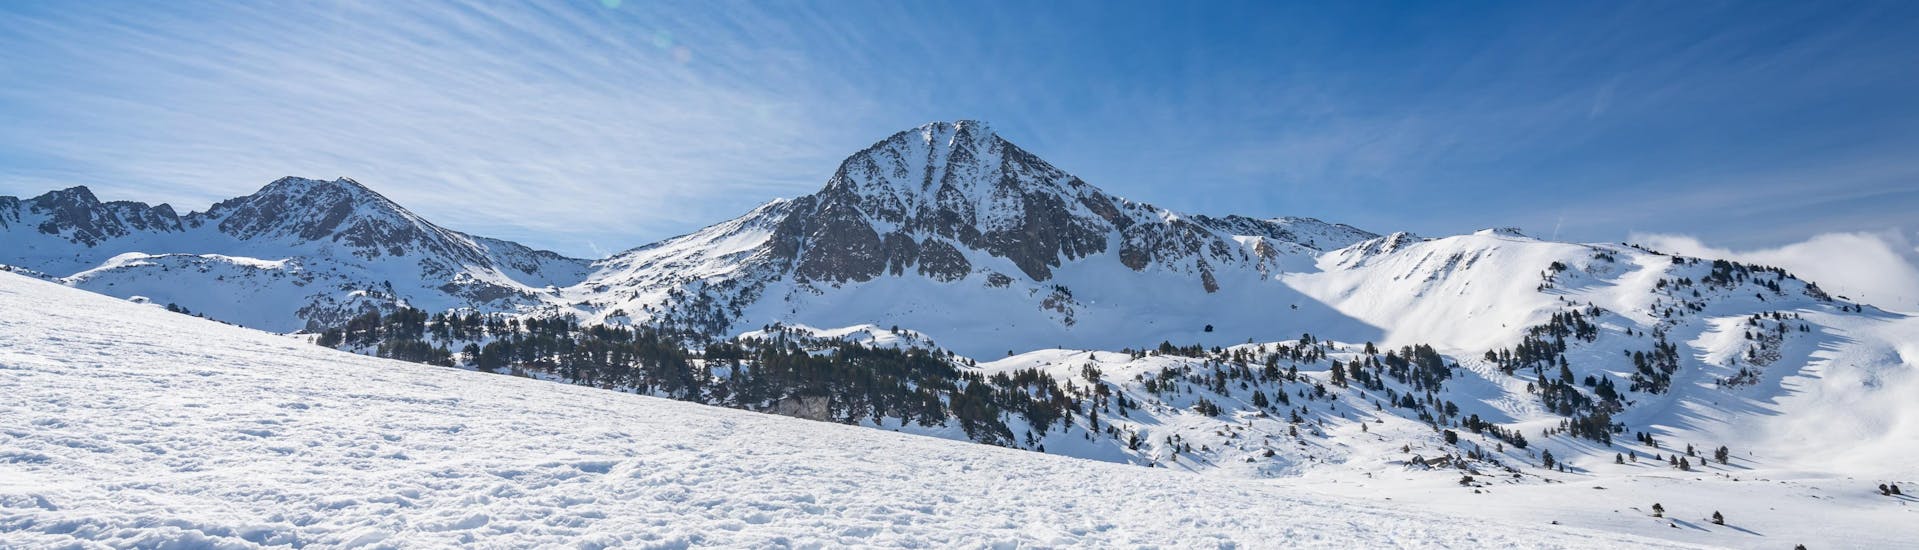 Imagen del sol brillando sobre las montañas nevadas en Baqueira, estación de esquí española done las escuelas de esquí locales ofrecen clases de esquí a los visitantes que quieren aprender a esquiar.